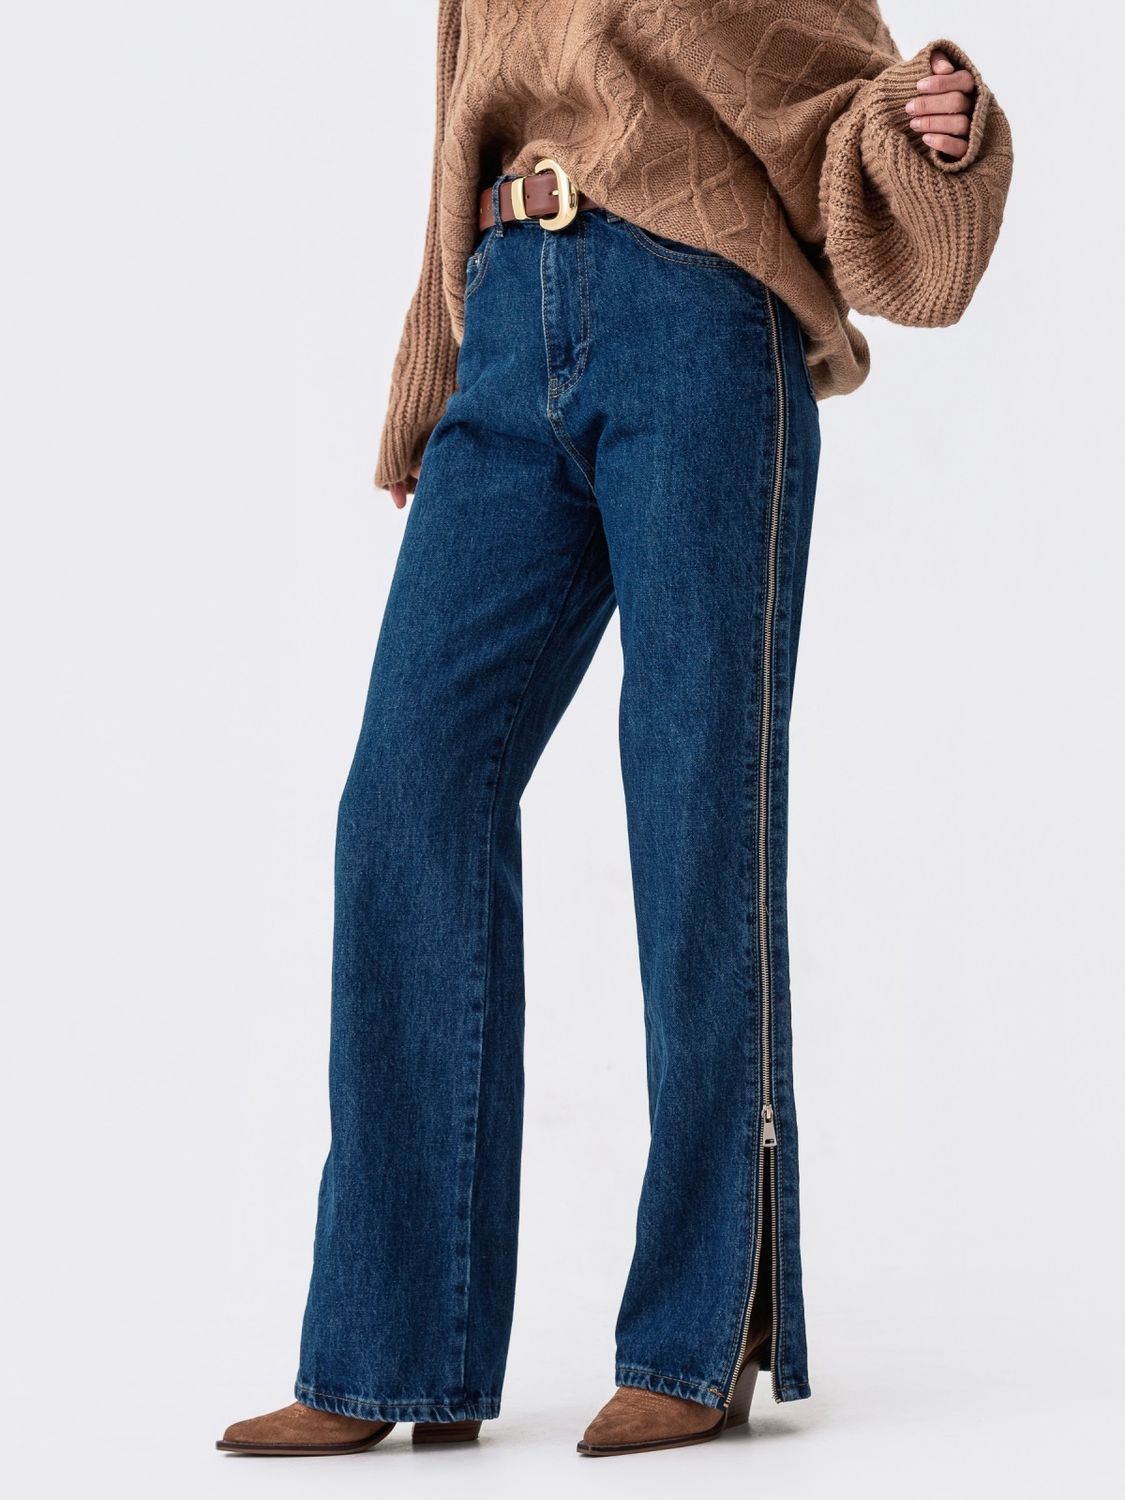 Стильные женские джинсы с высокой посадкой - фото